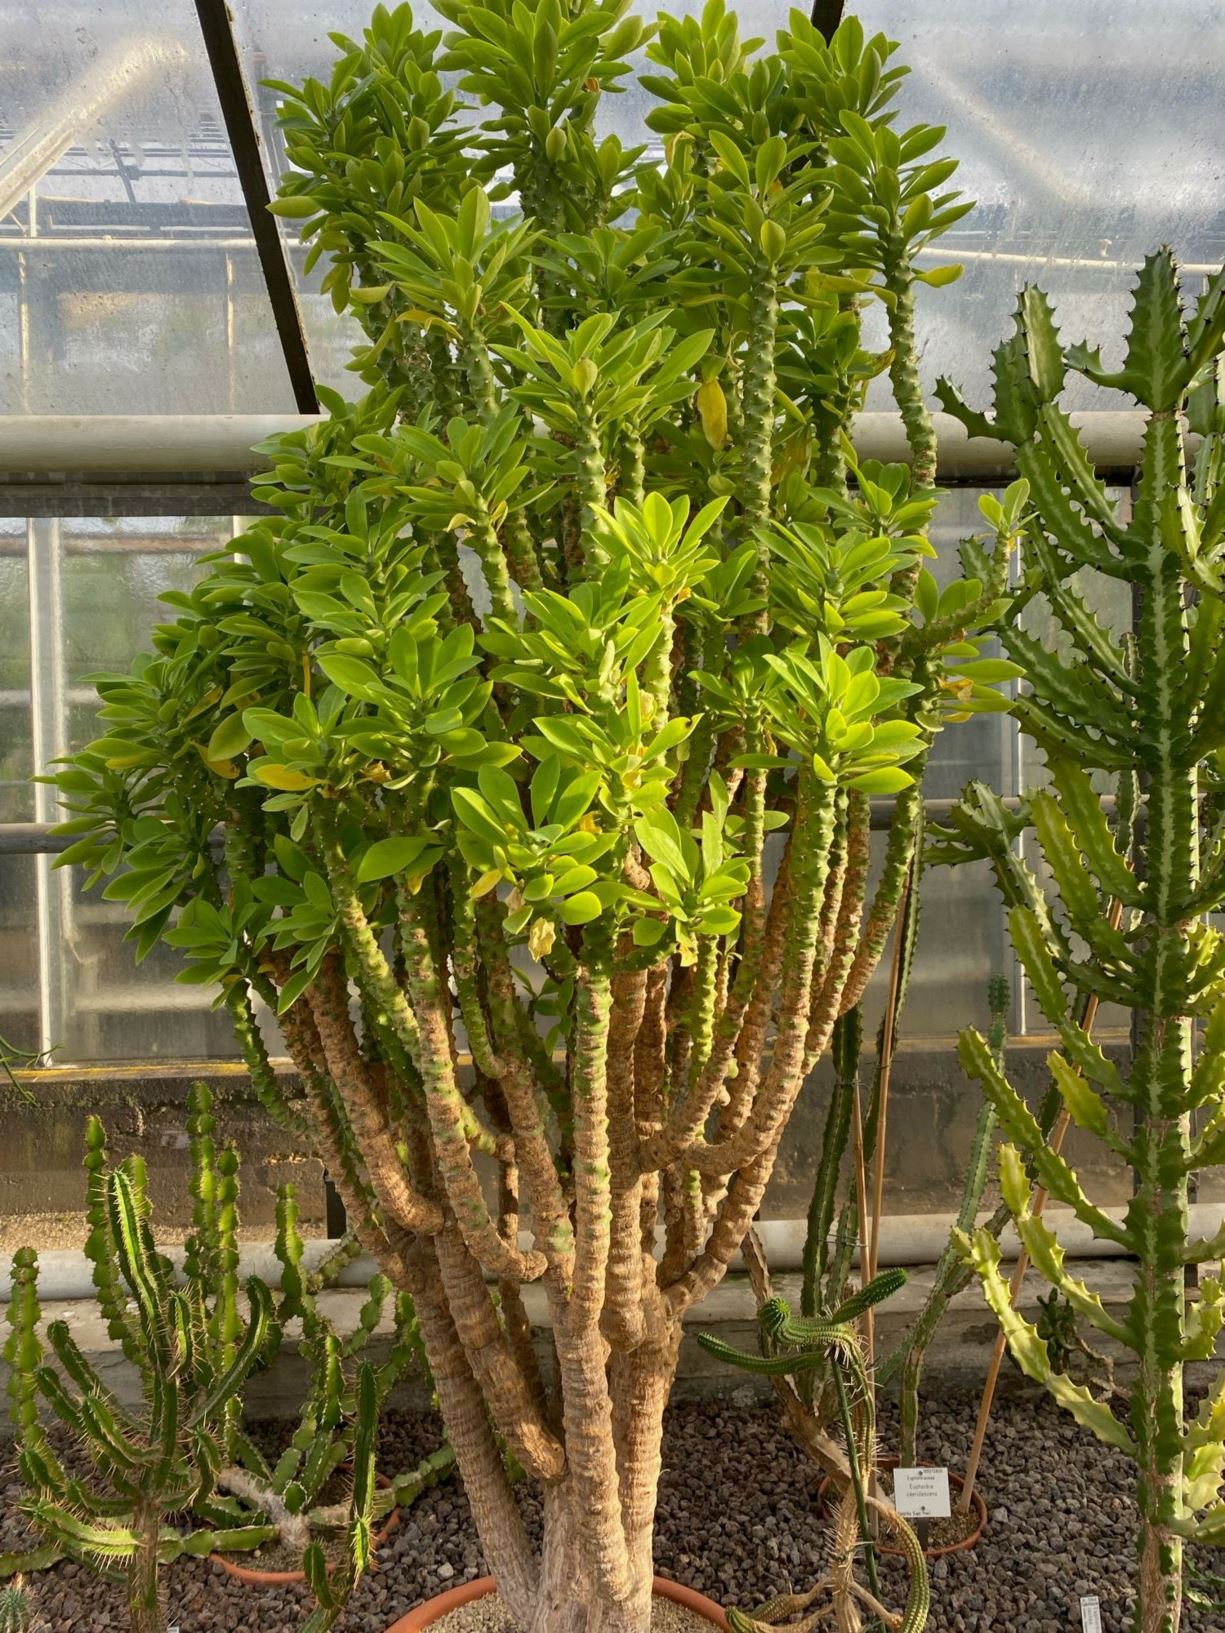 Euphorbia teke